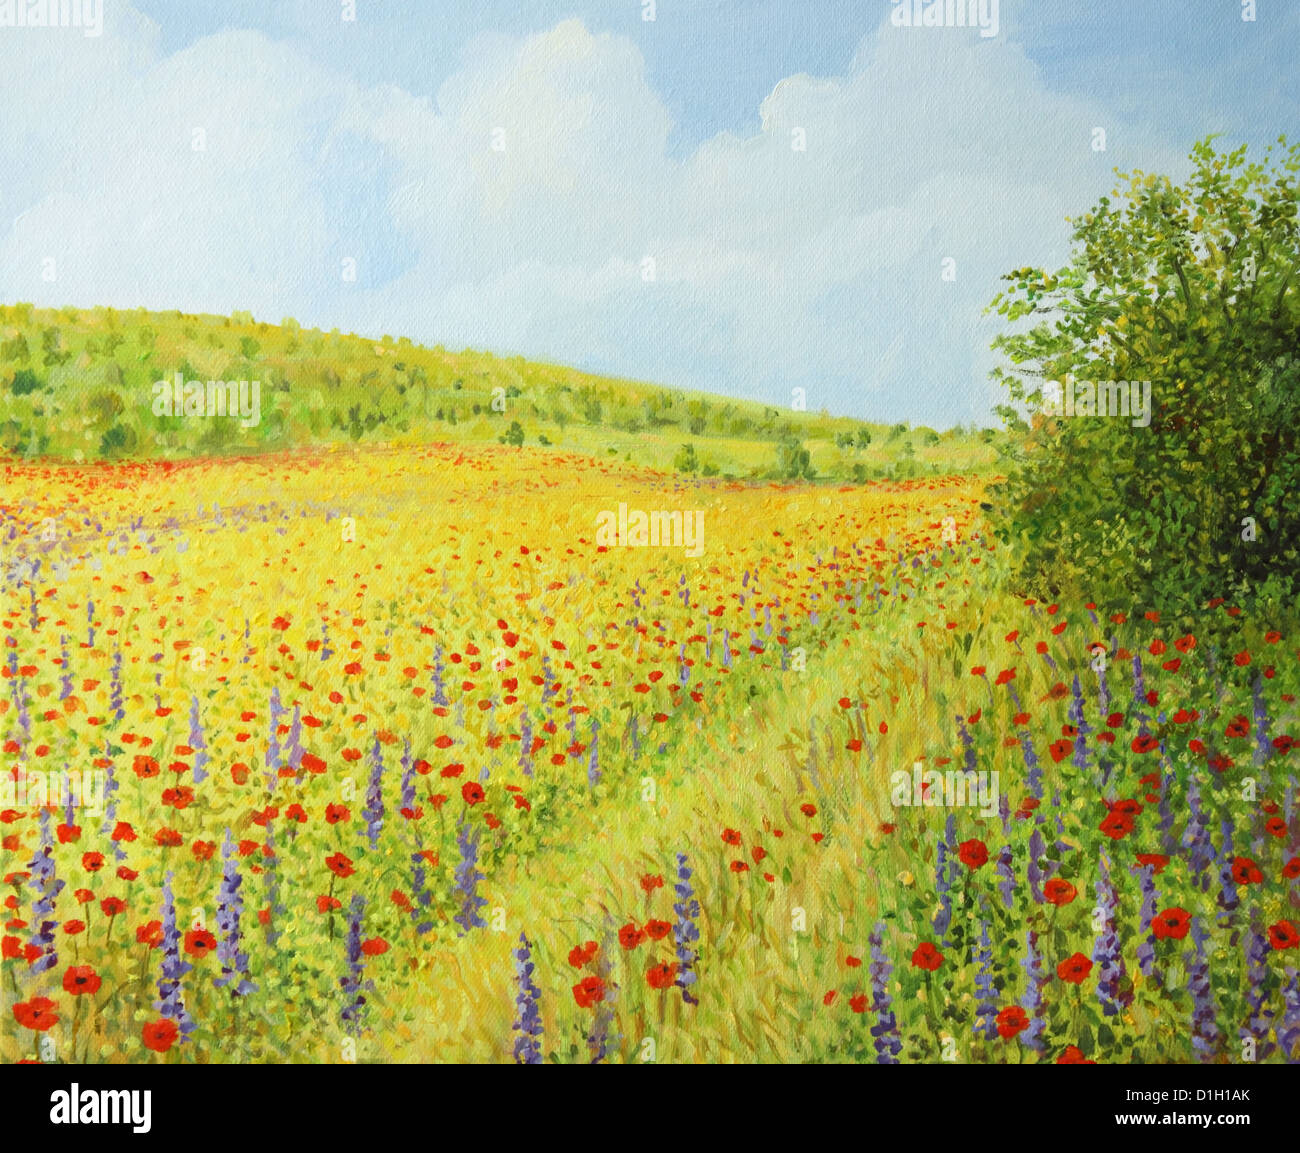 Un dipinto ad olio su tela di un campo vibrante selvaggio con fiori di primavera come il papavero Semi di colza e di giacinto in una luminosa giornata di sole. Foto Stock